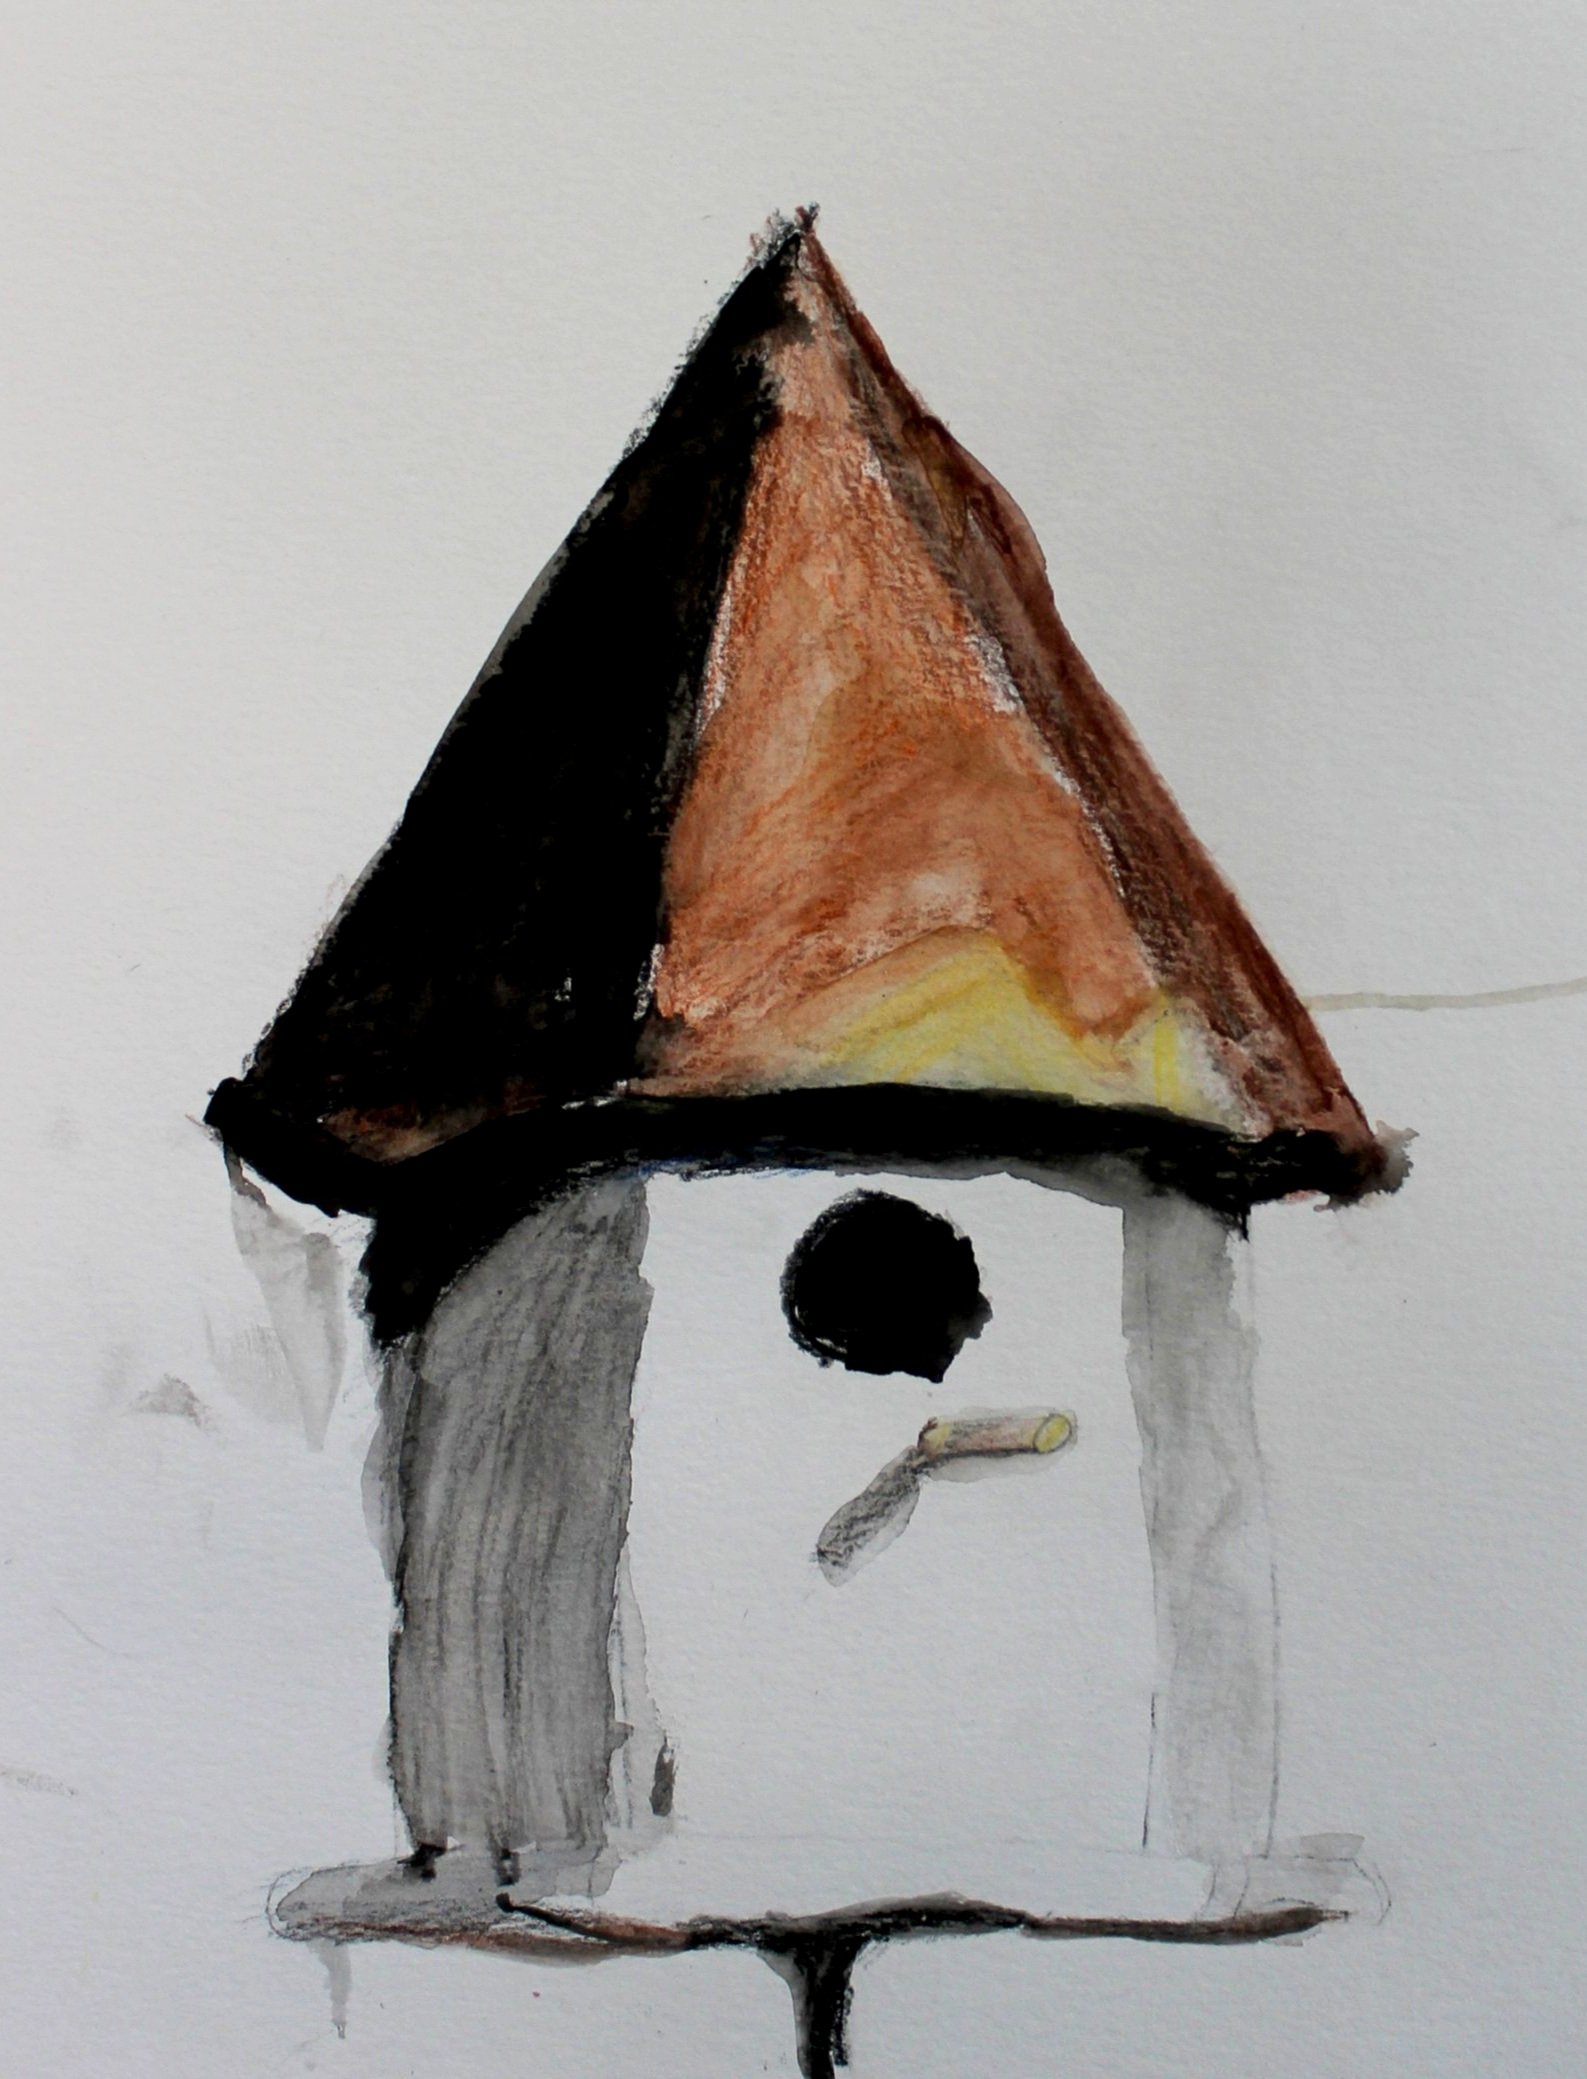 Levi, age 6, watercolor pencil